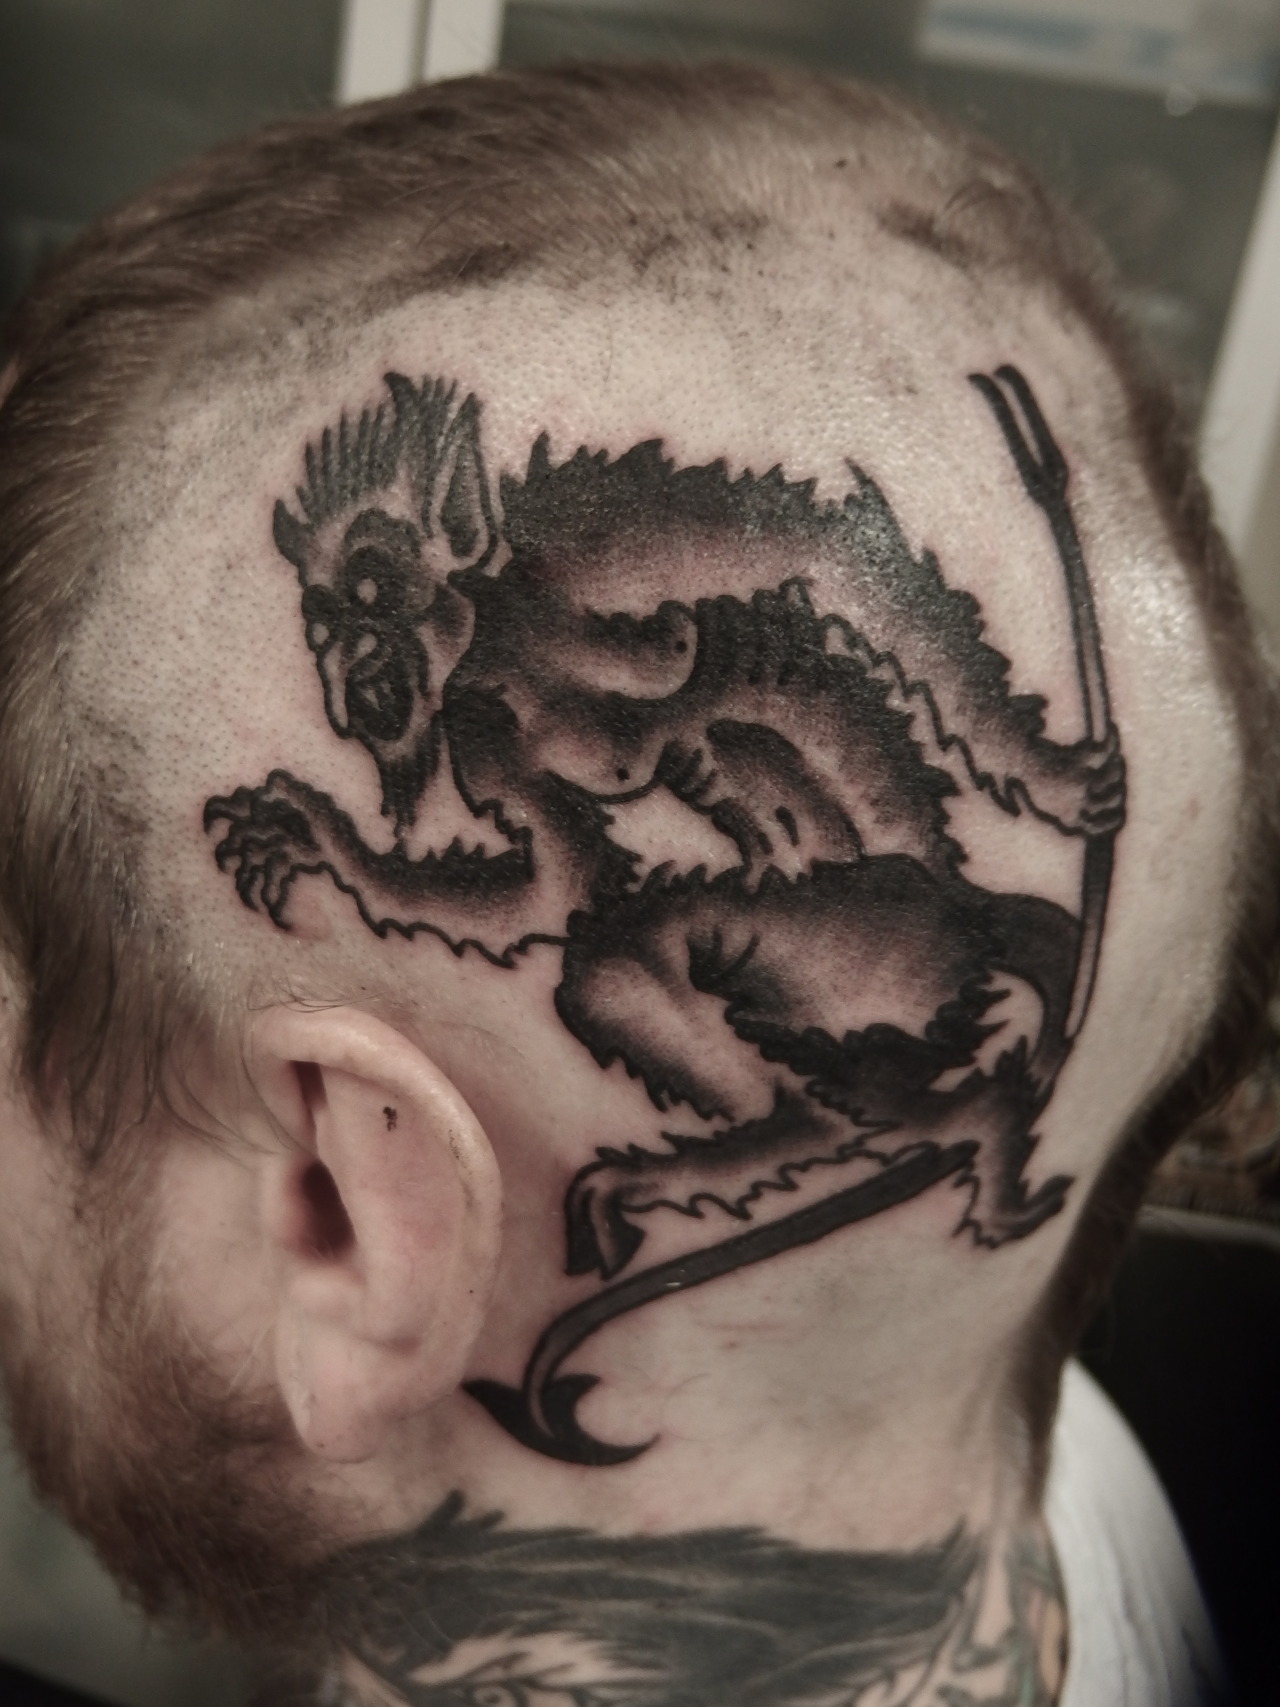 small devil whisper in ear tattooTikTok Search